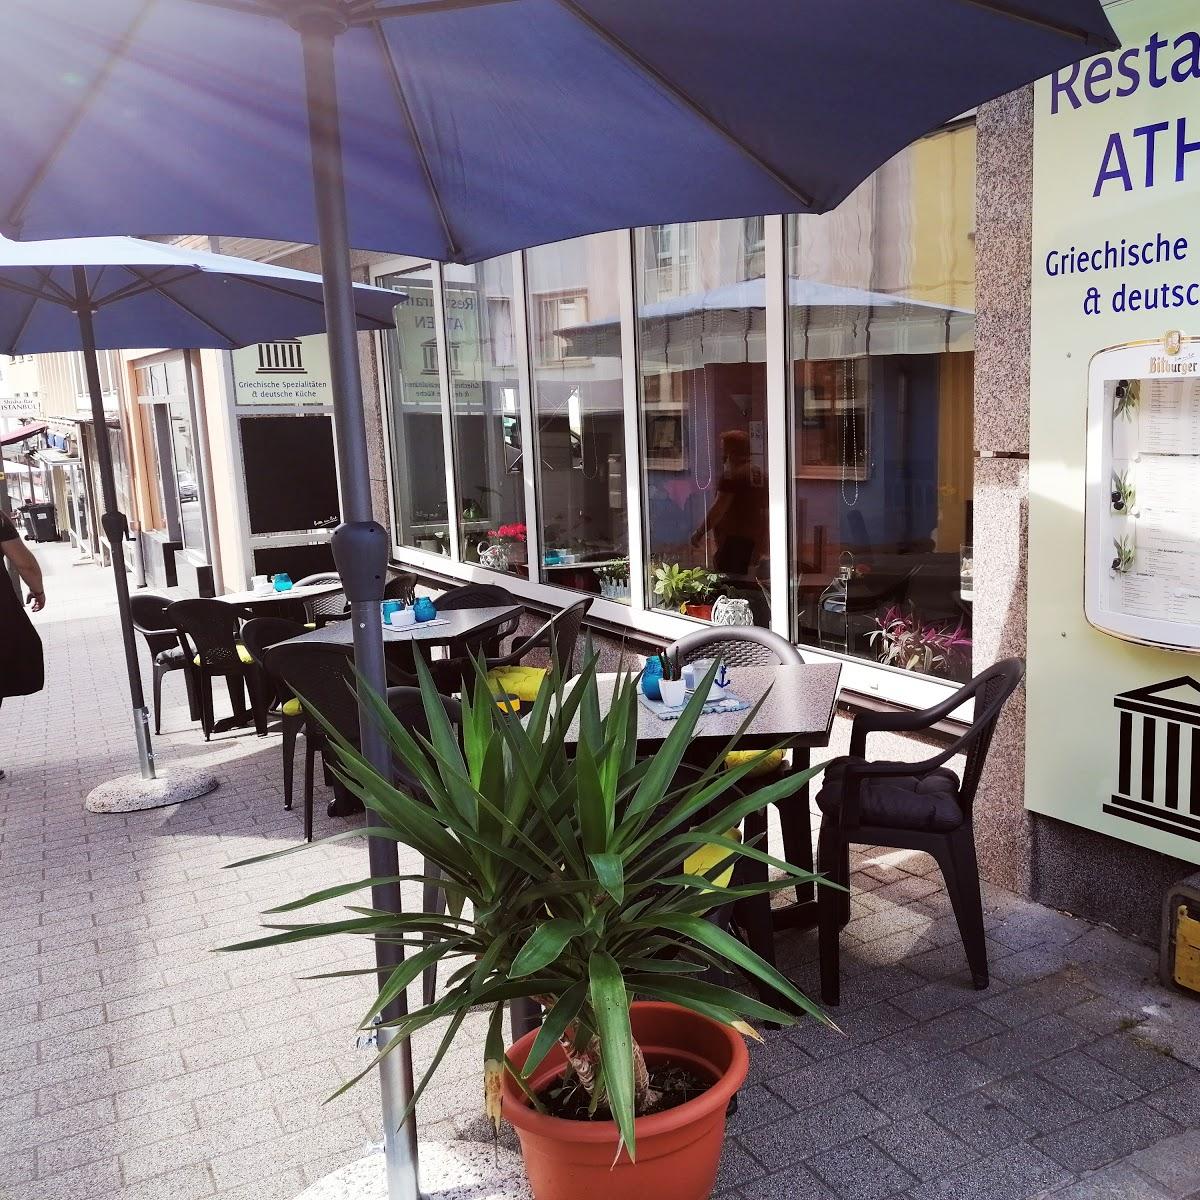 Restaurant "Restaurant Athen" in  Gerolstein